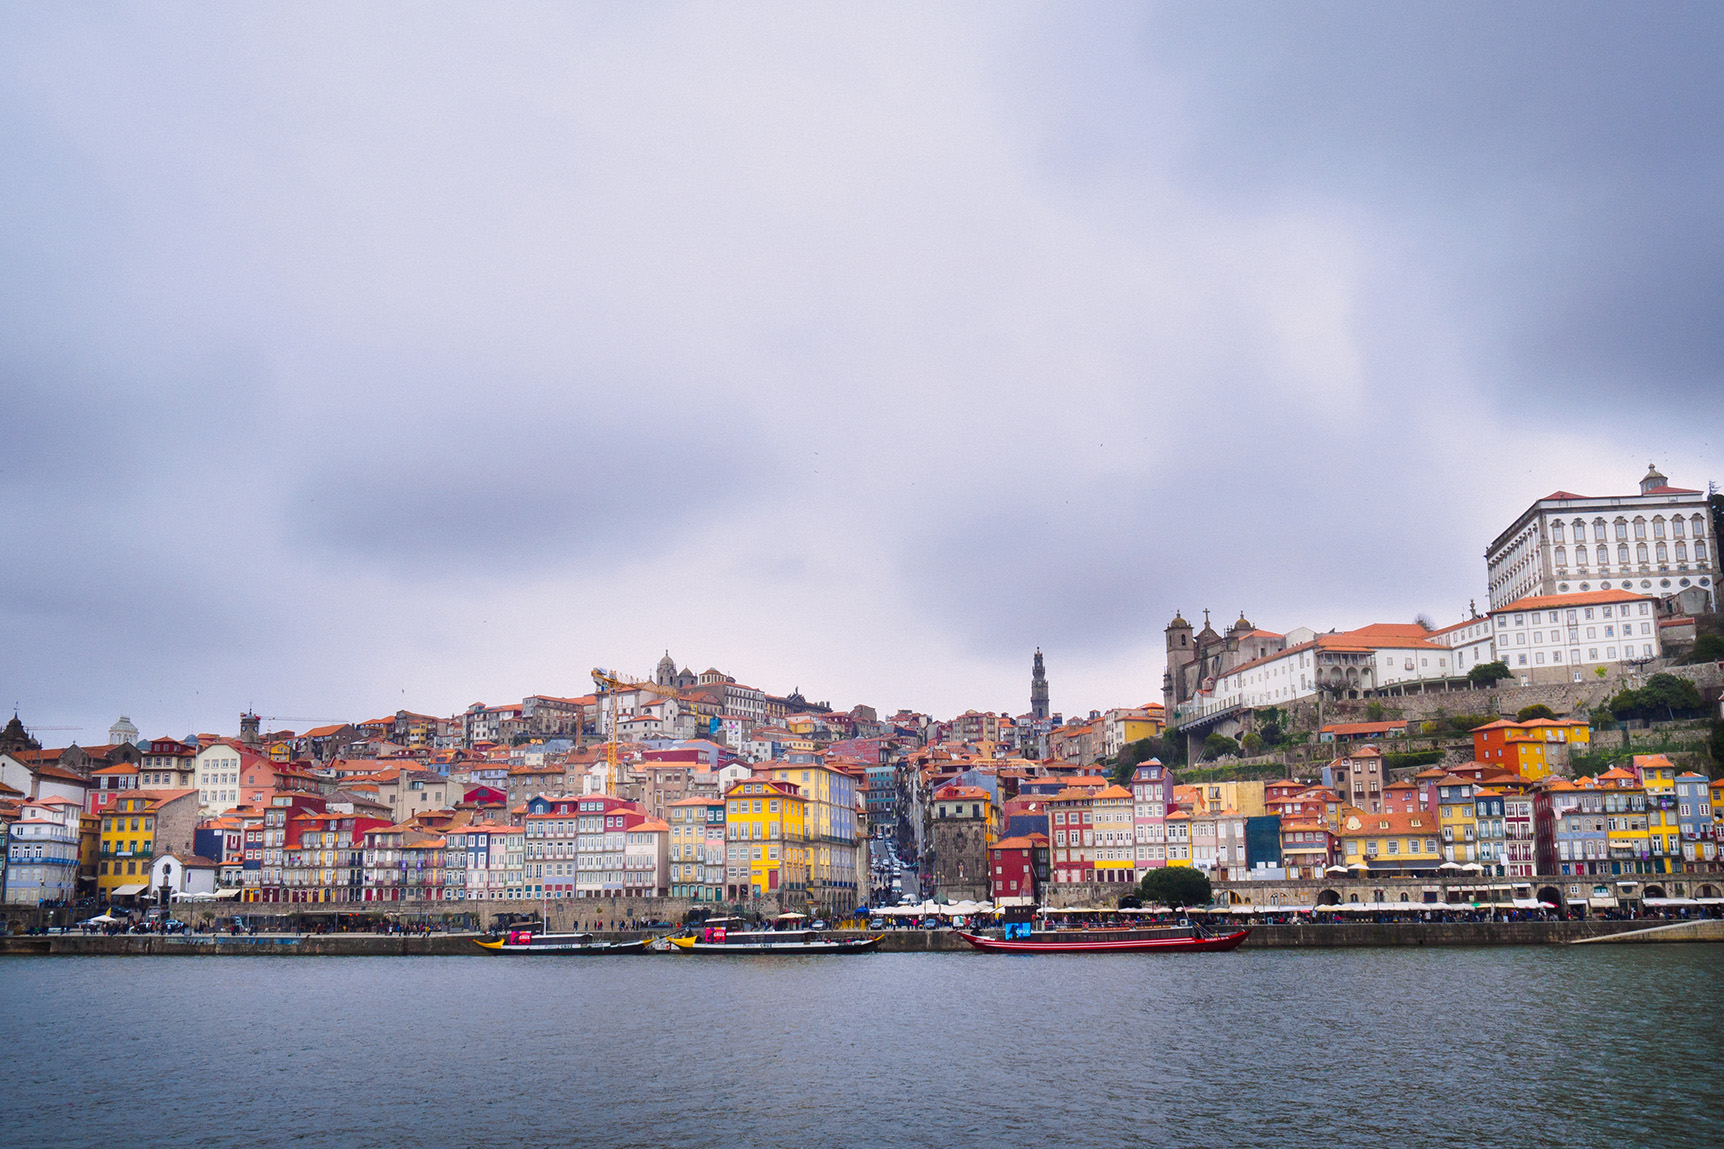 Porto's colourful architecture by the Duoro River.